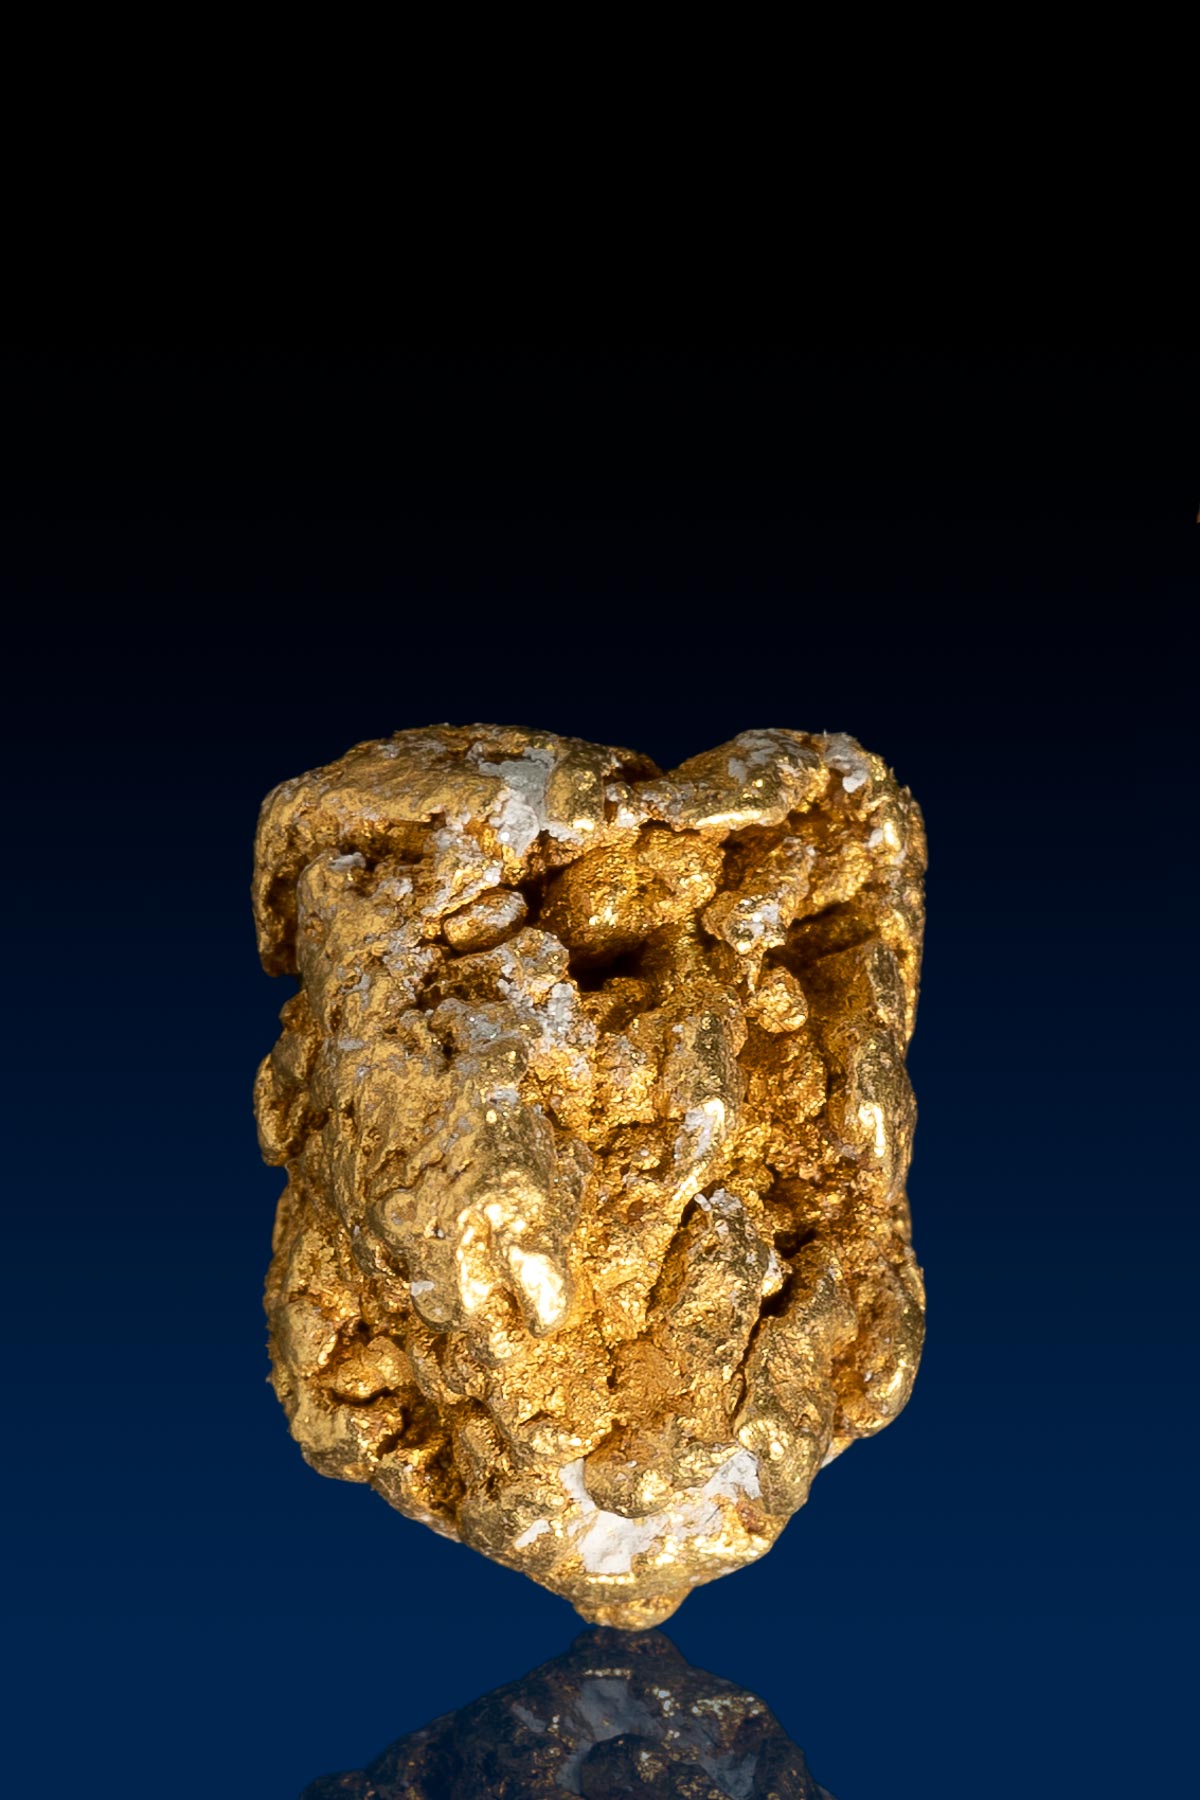 Alaskan Natural Gold Nugget - 2.07 grams